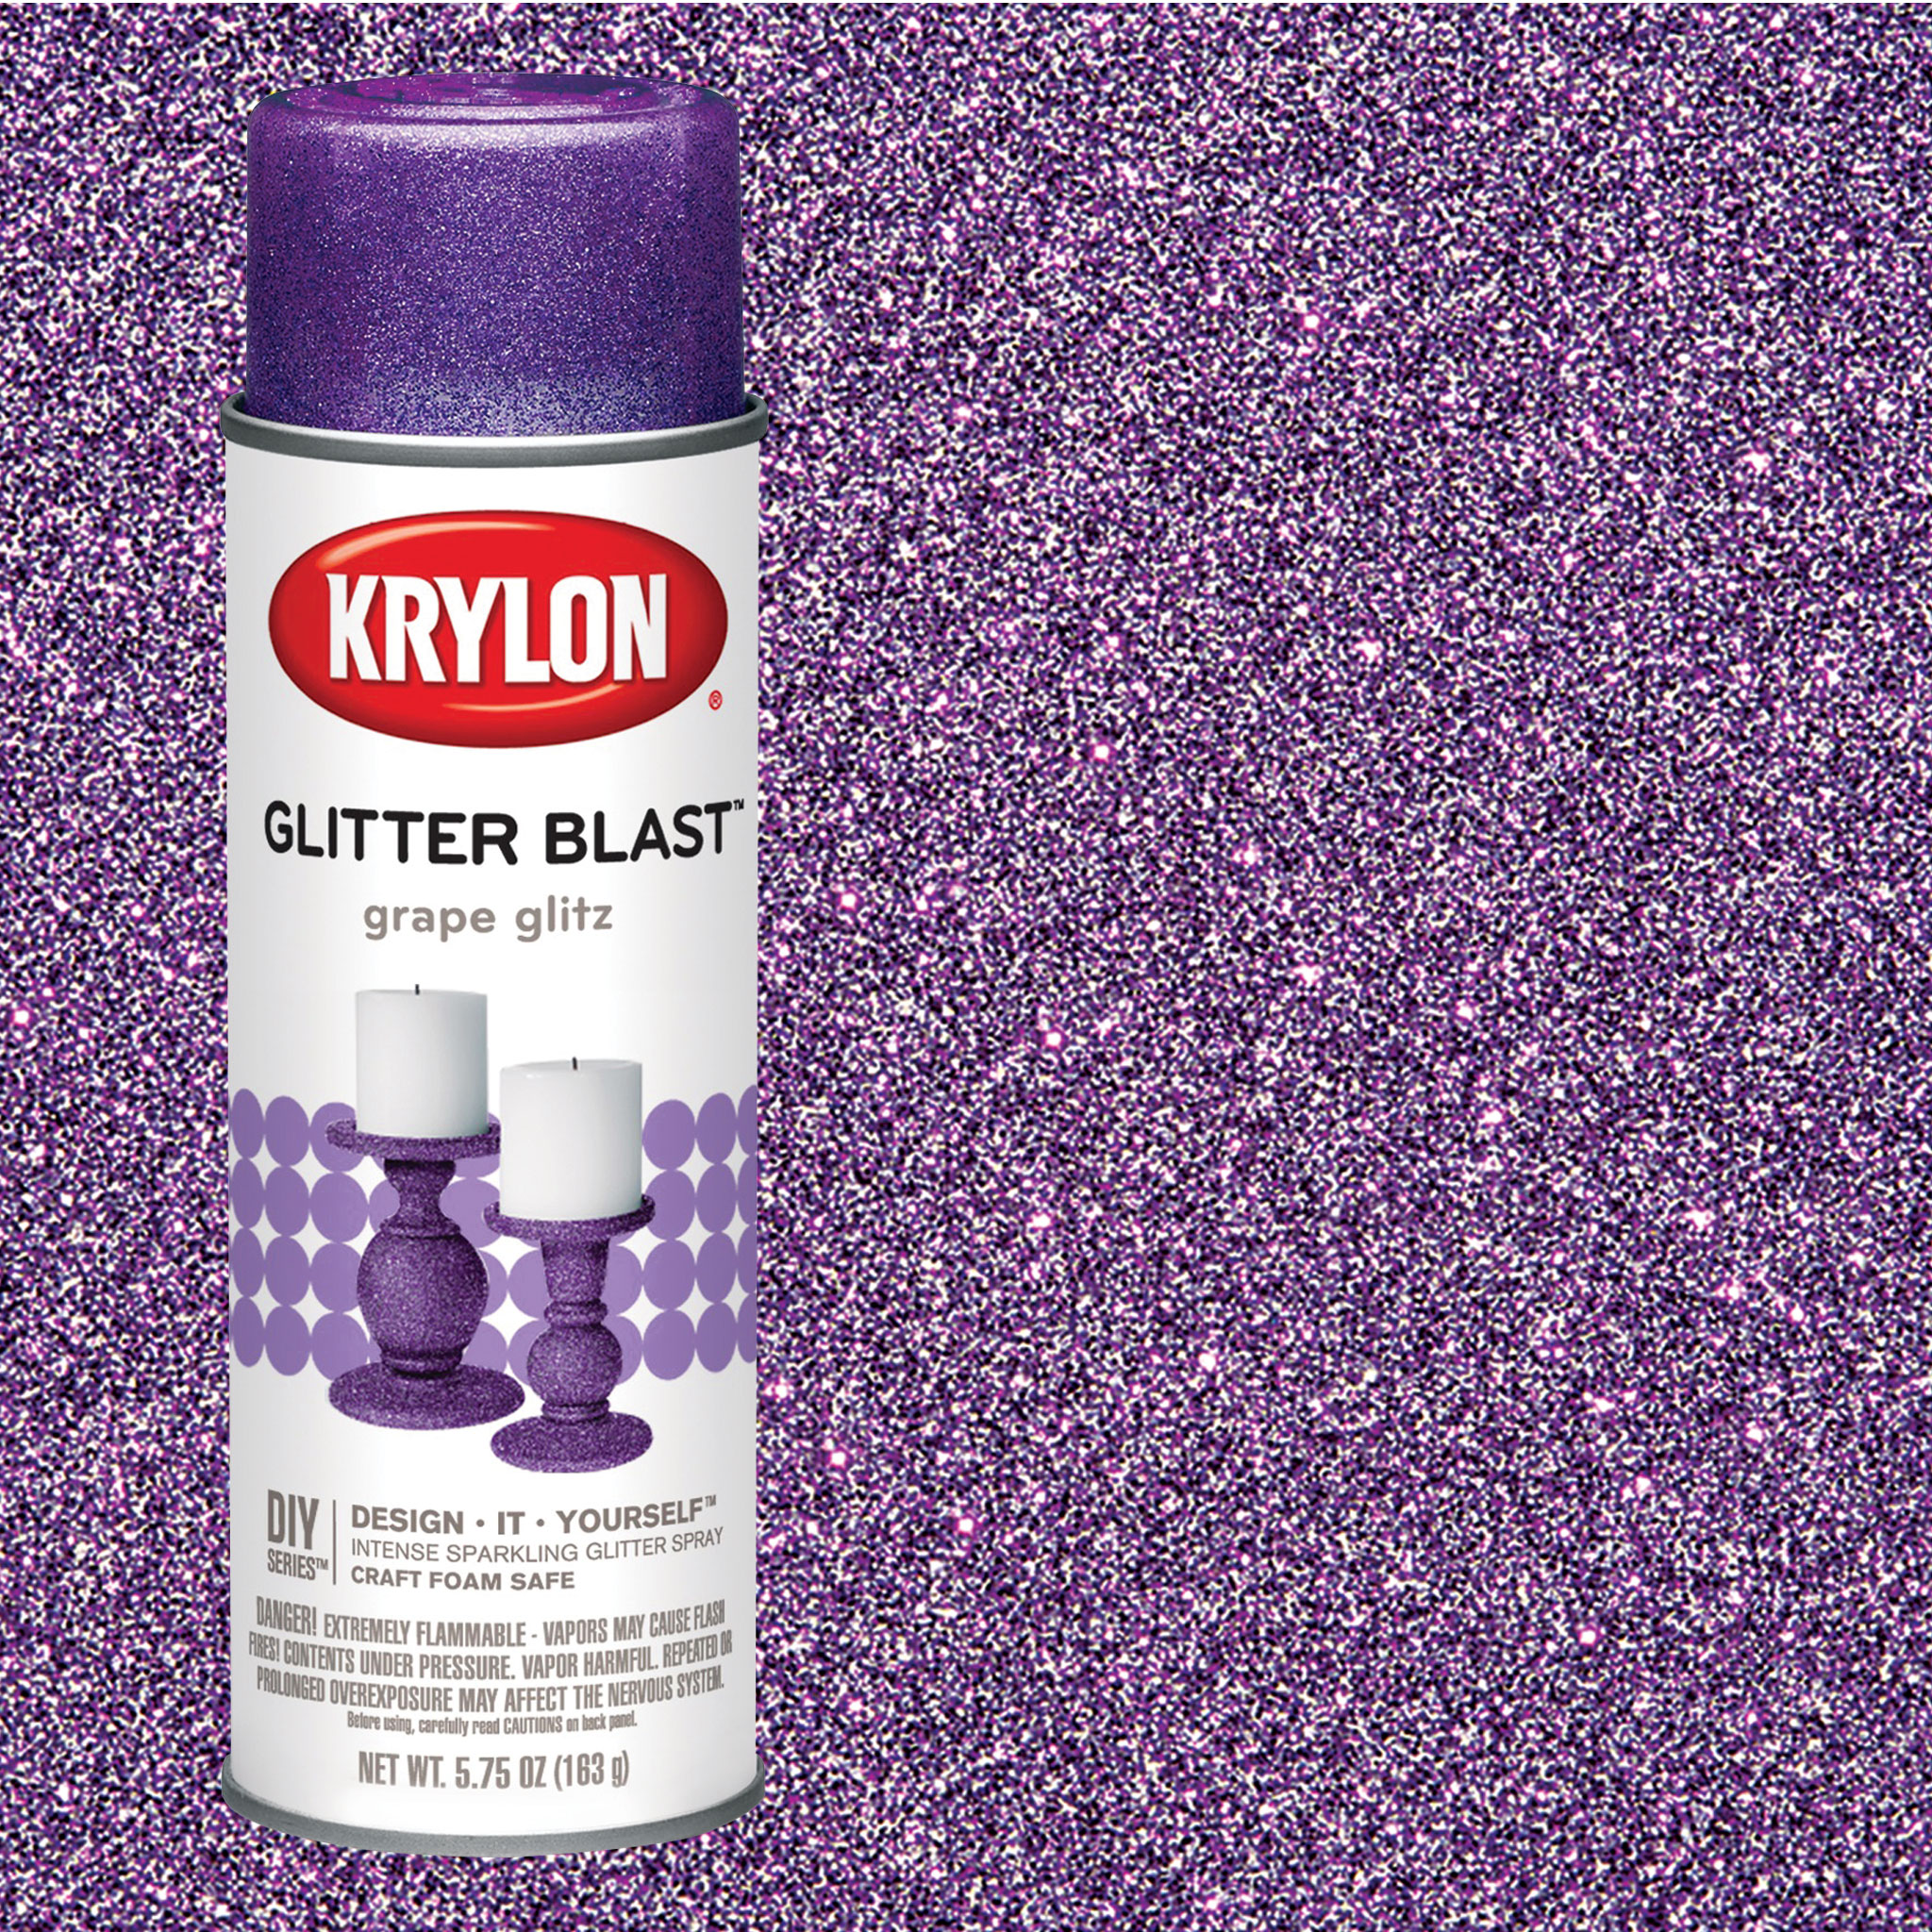 Krylon Glitter Blast Diamond Dust Glitter Spray Paint - Glitter